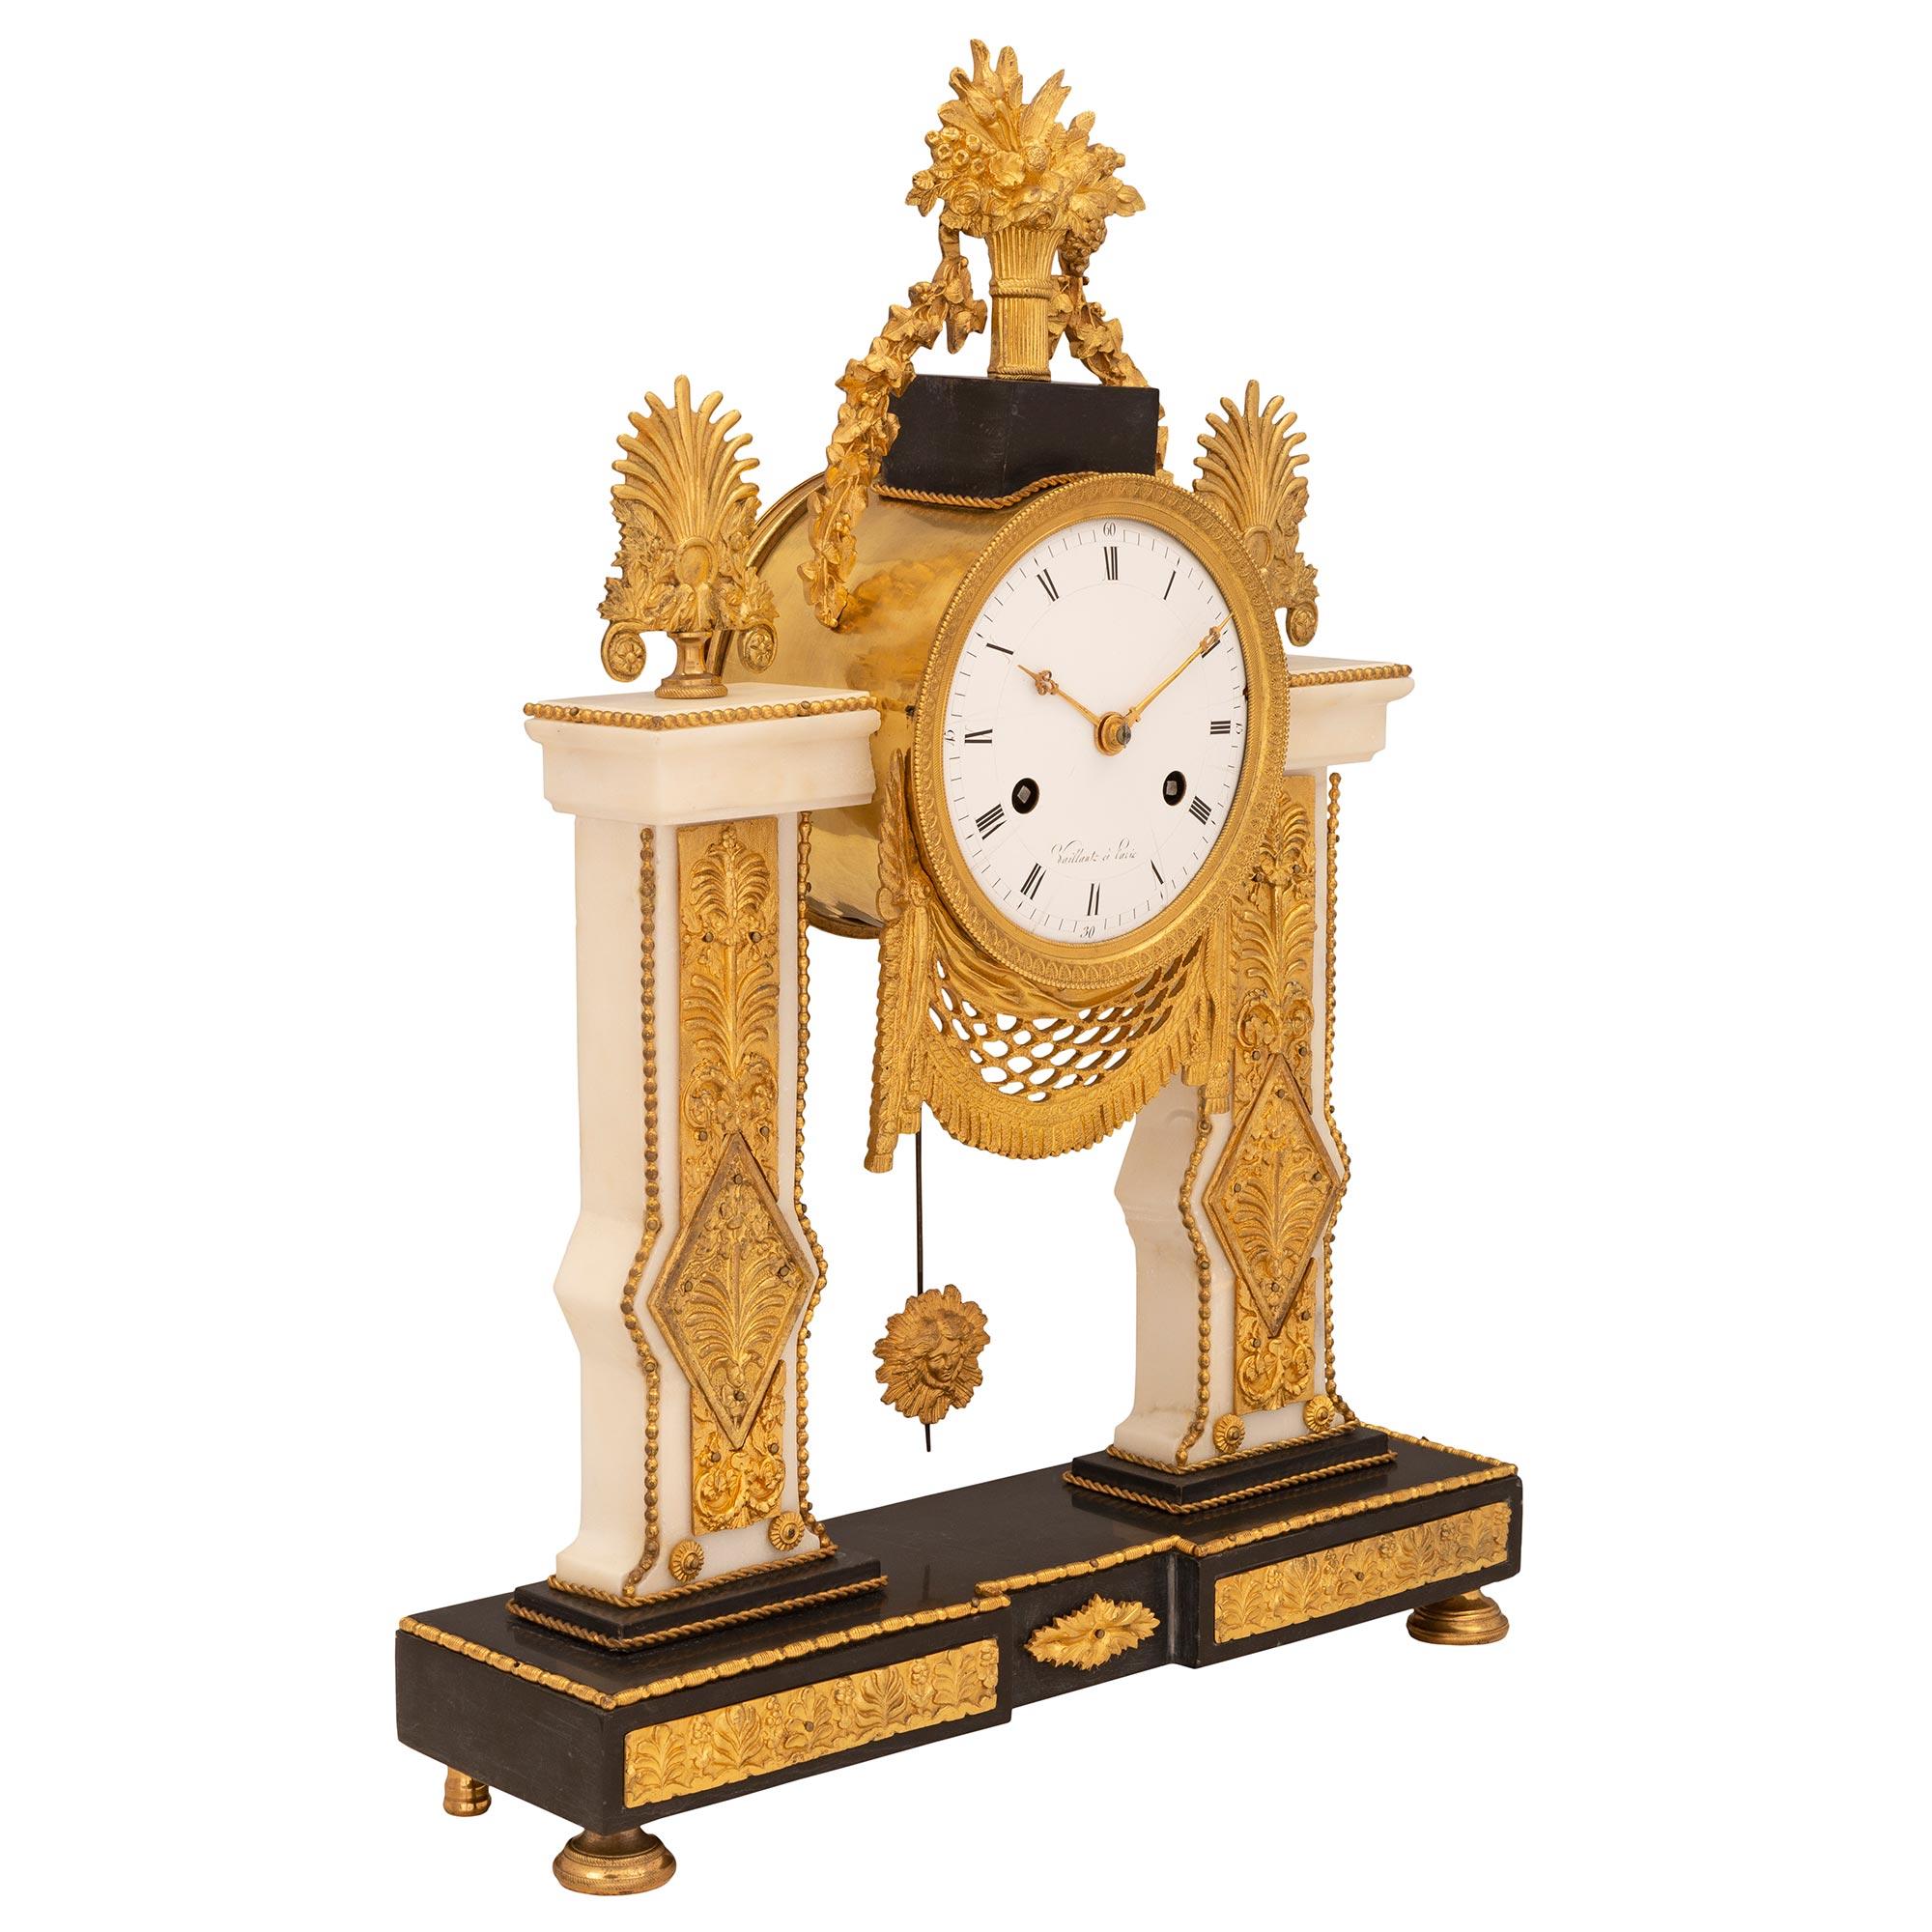 Eine auffallende französische Uhr im neoklassischen Stil des 19. Jahrhunderts aus Ormolu, schwarzem belgischen und weißem Carrara-Marmor, signiert Vaillant à Paris. Die Uhr steht auf einem Sockel aus schwarzem belgischem Marmor mit feinen